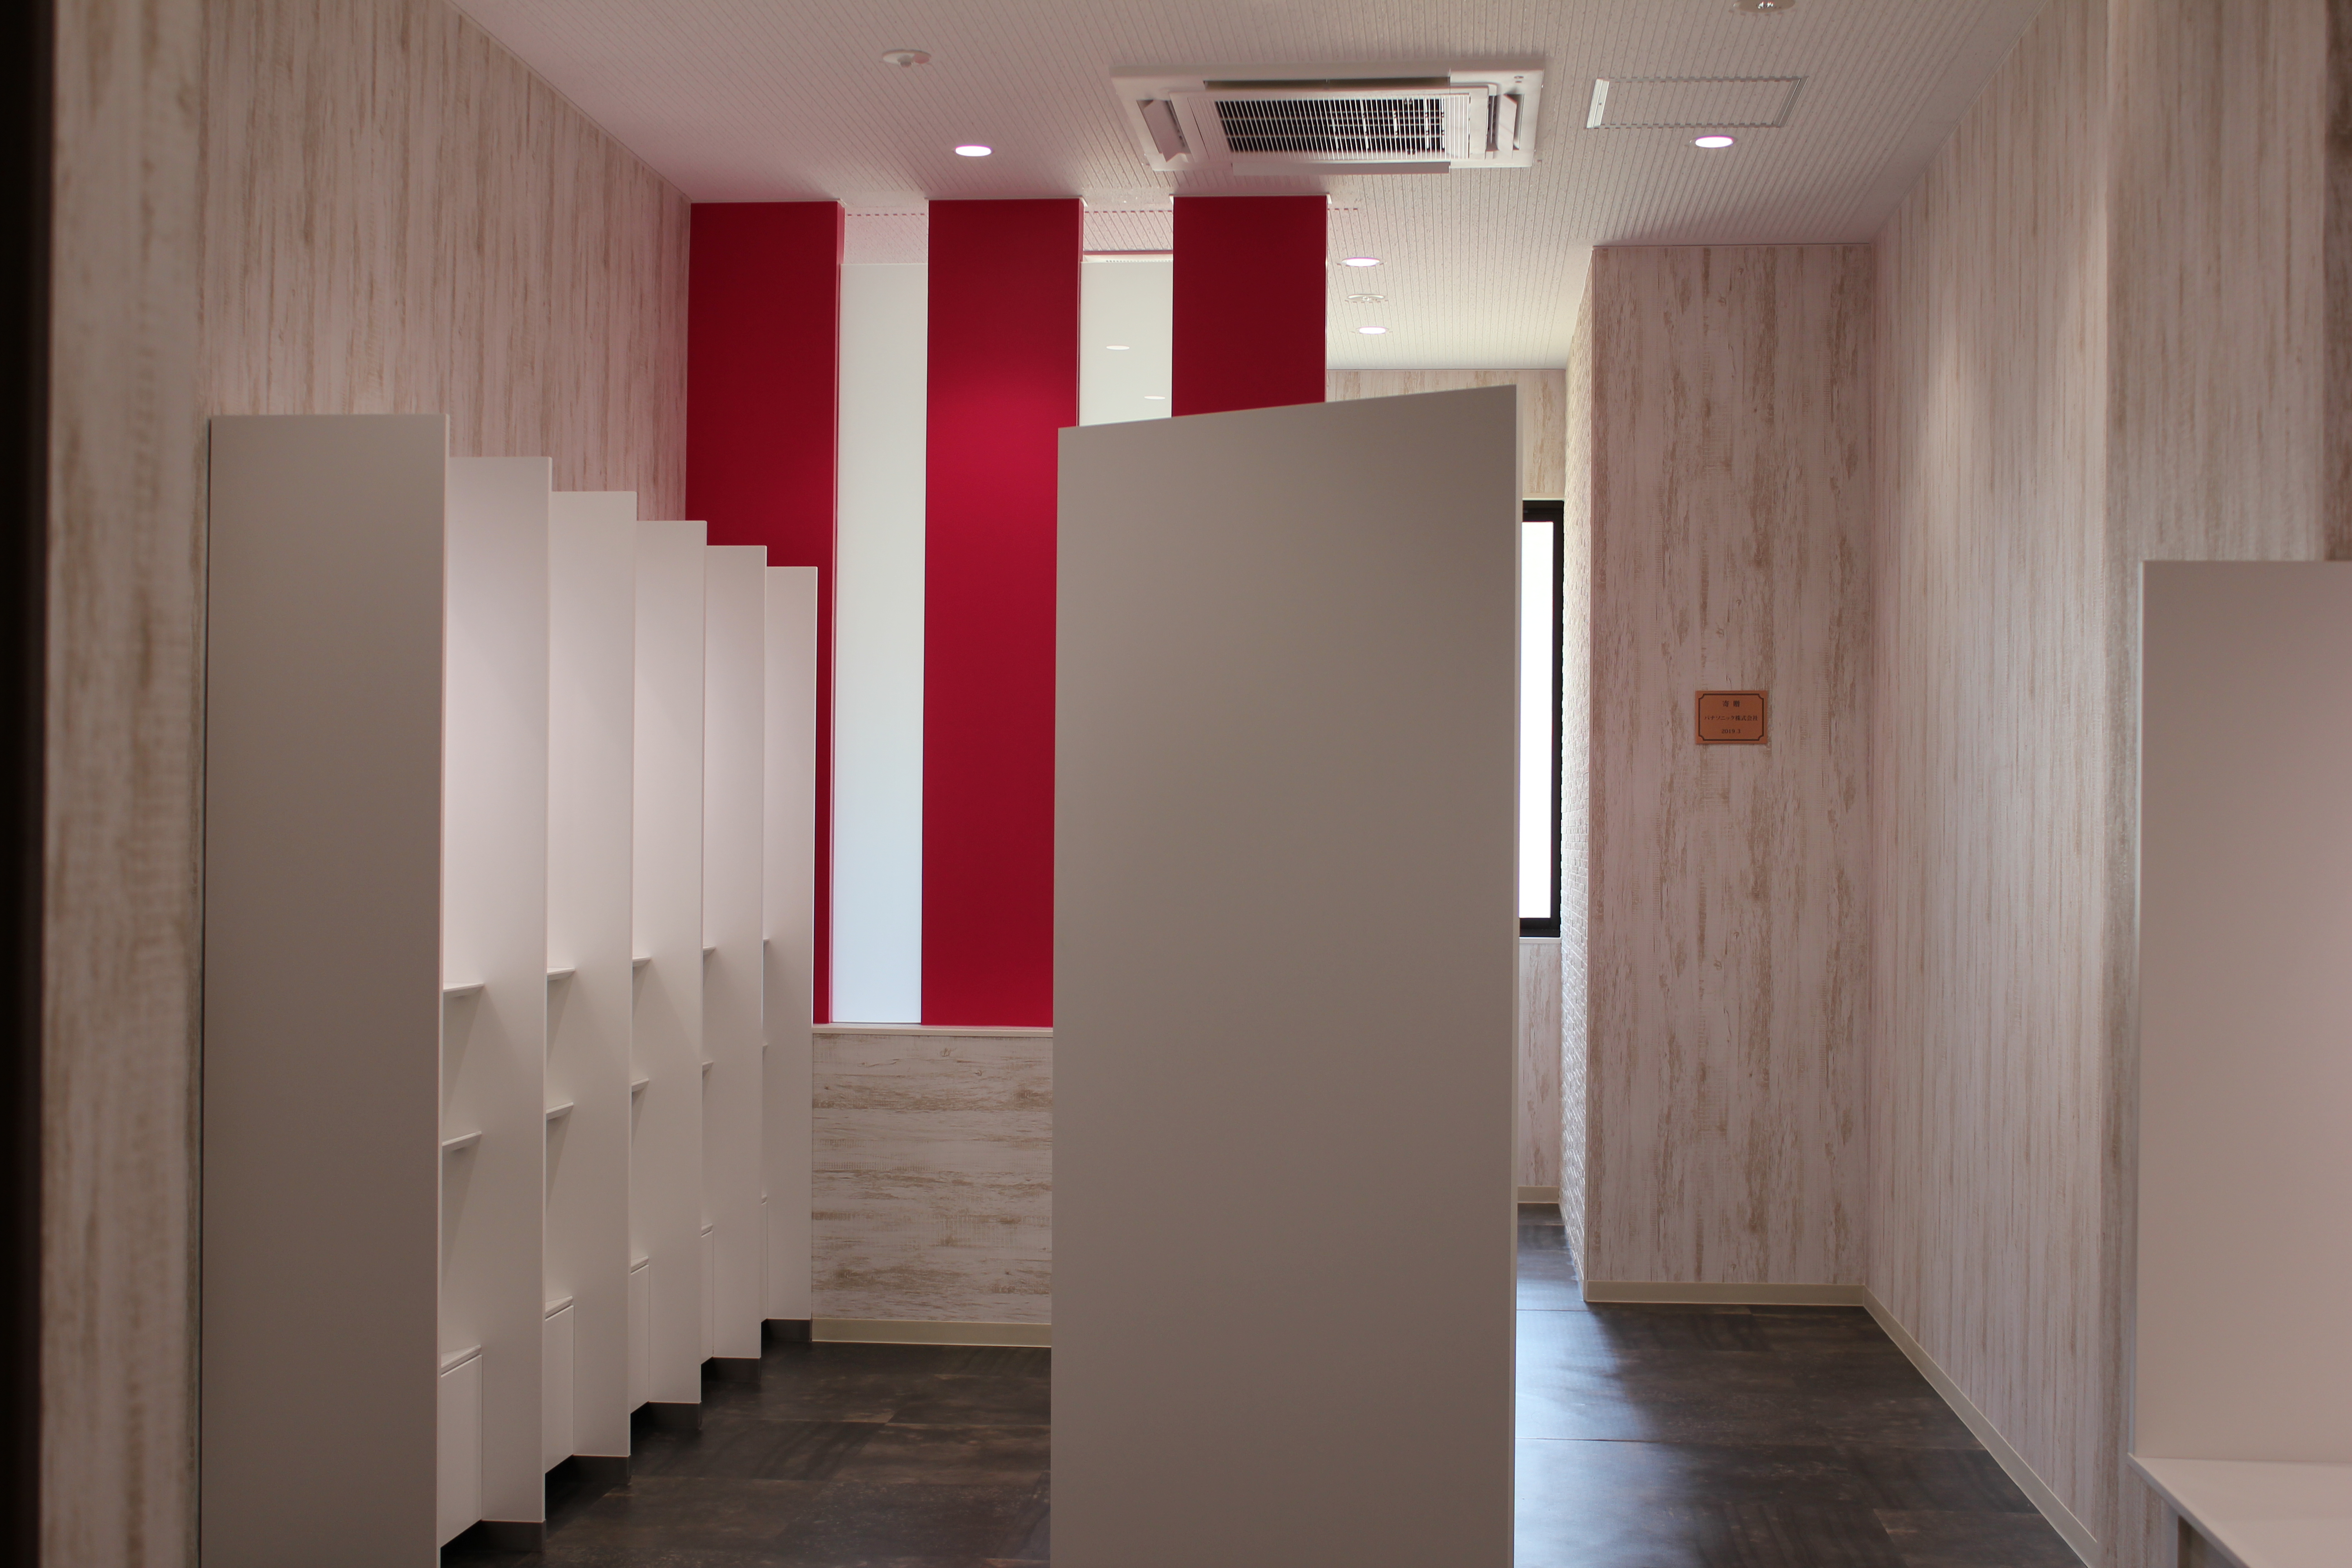 大阪大学とパナソニック株式会社の共創による魅力的なトイレ空間が完成